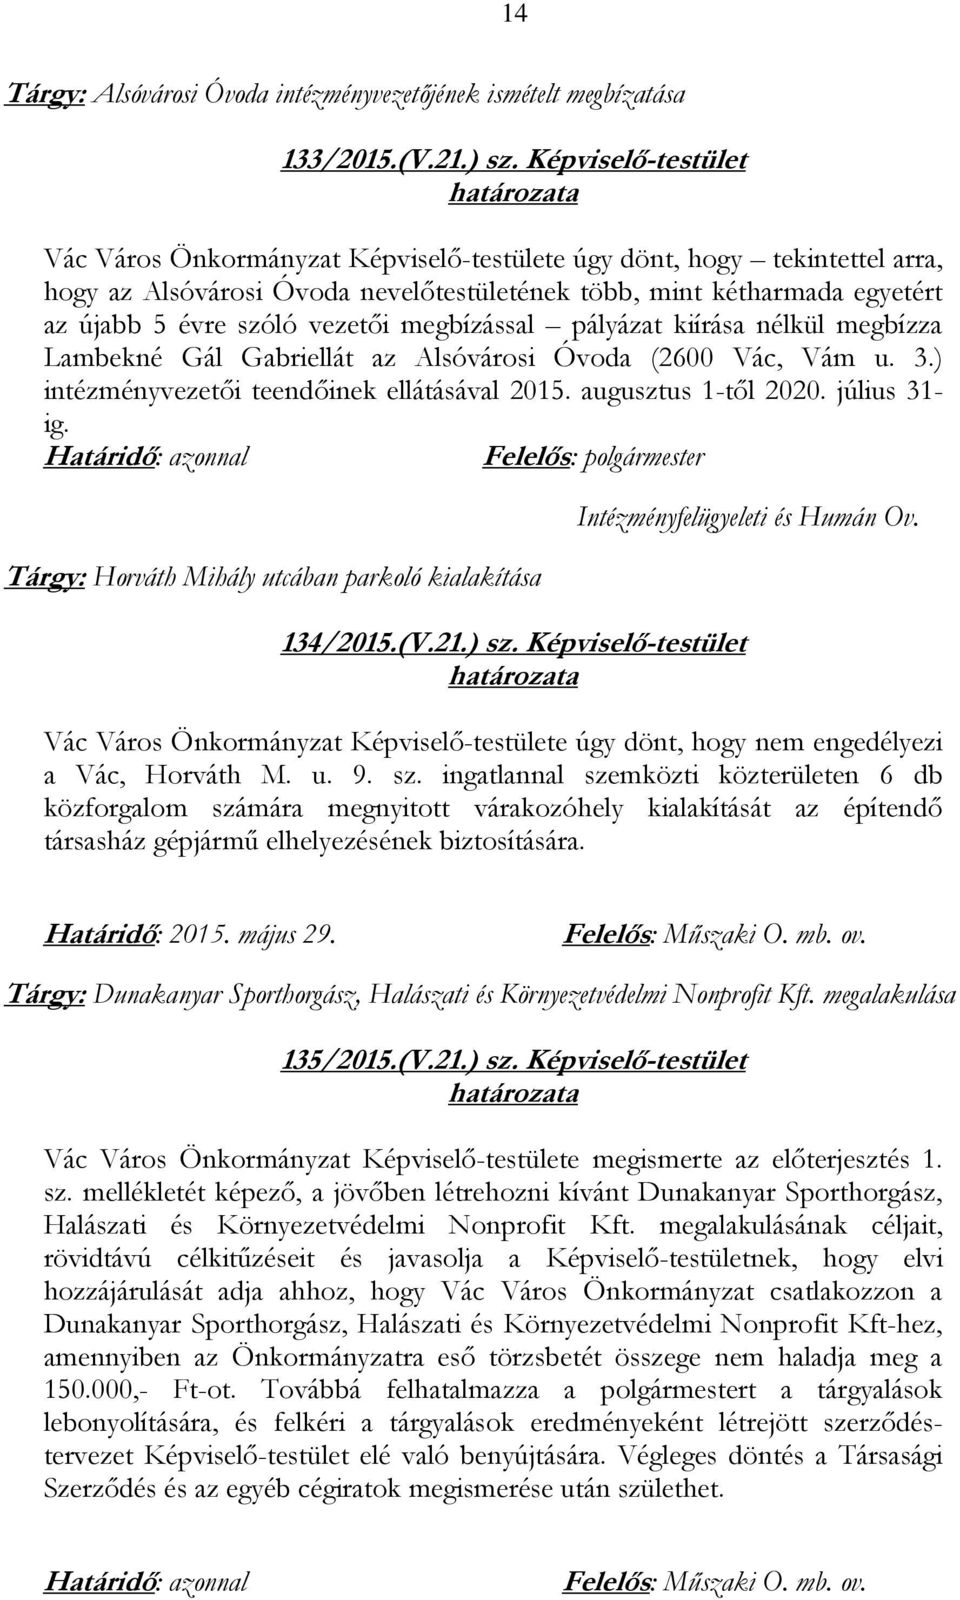 megbízással pályázat kiírása nélkül megbízza Lambekné Gál Gabriellát az Alsóvárosi Óvoda (2600 Vác, Vám u. 3.) intézményvezetői teendőinek ellátásával 2015. augusztus 1-től 2020. július 31- ig.